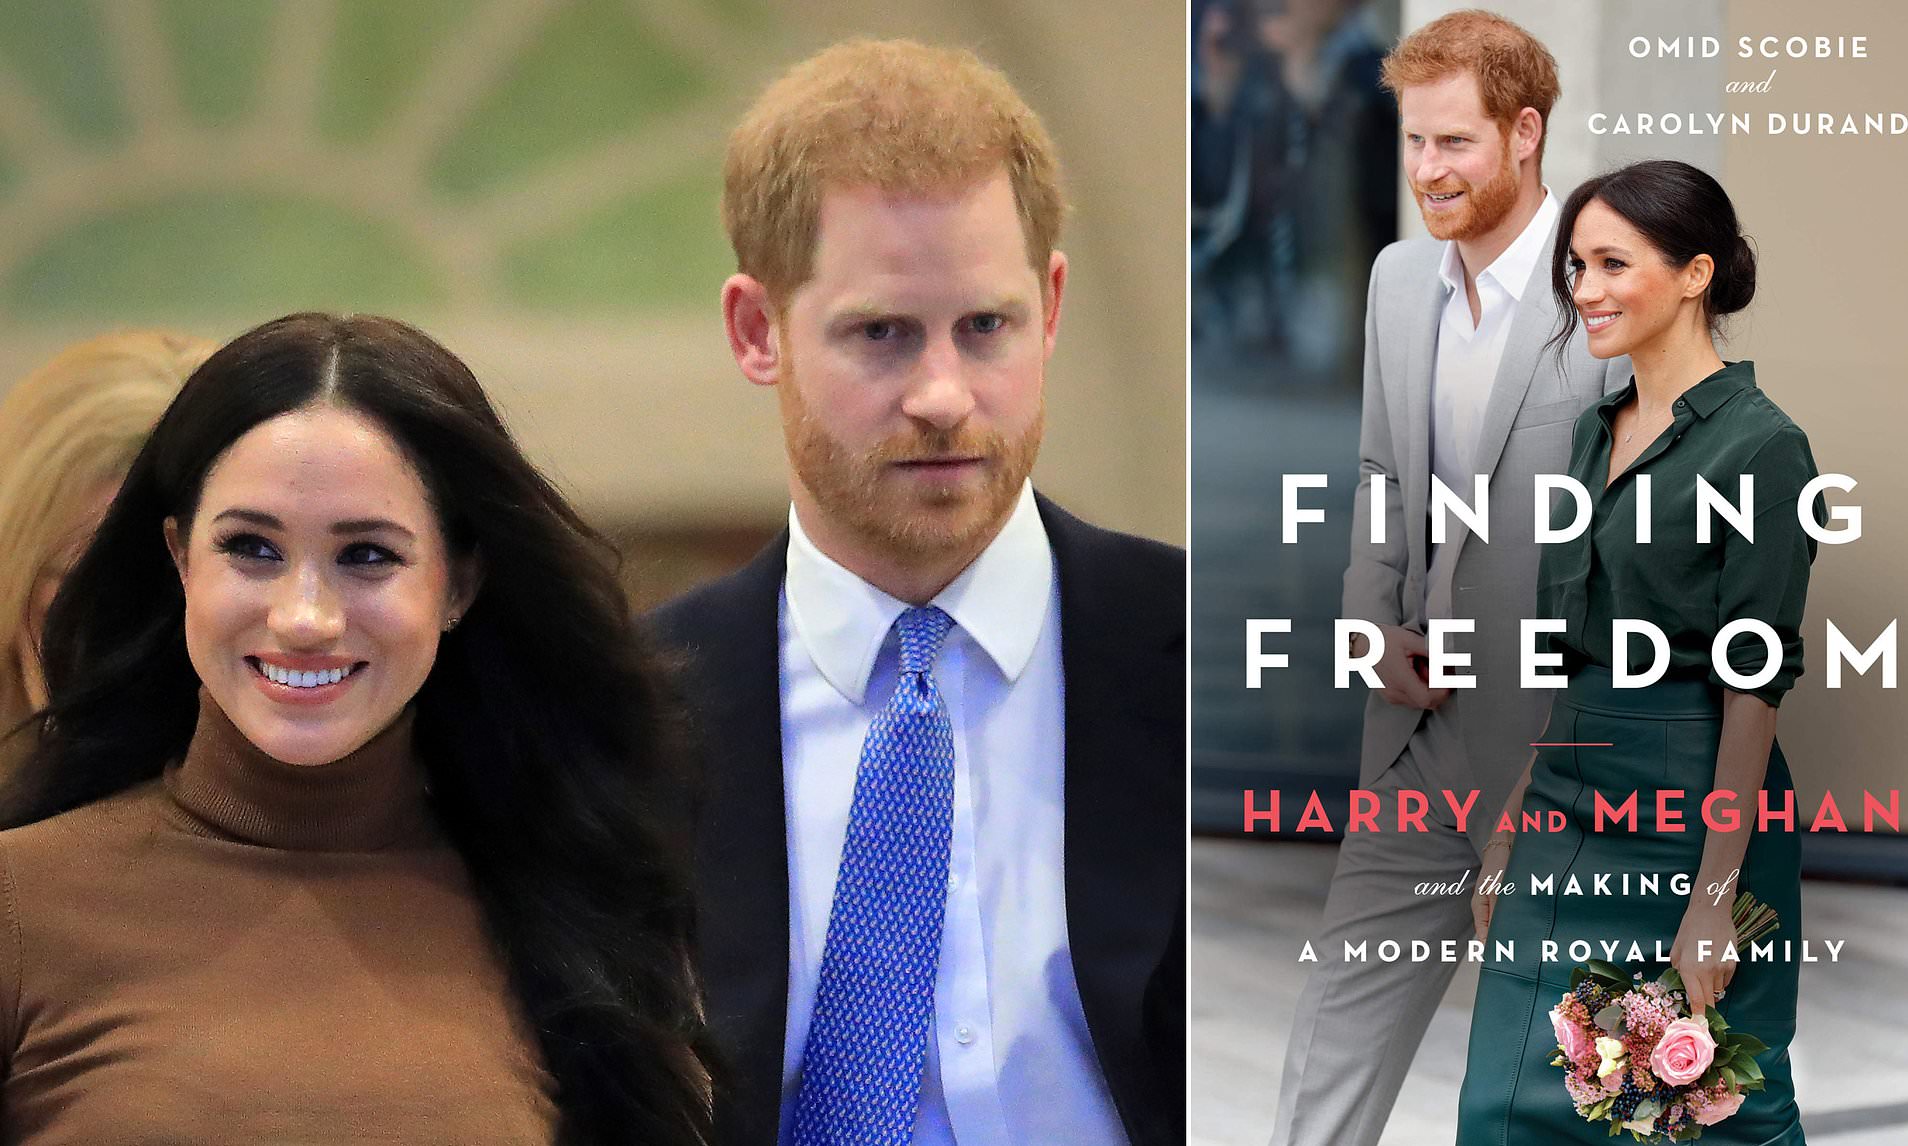 'Đòn' tiếp theo Meghan Markle và Hoàng tử Harry dành cho Hoàng gia Anh: Phát hành tự truyện 'Đi Tìm Tự Do'